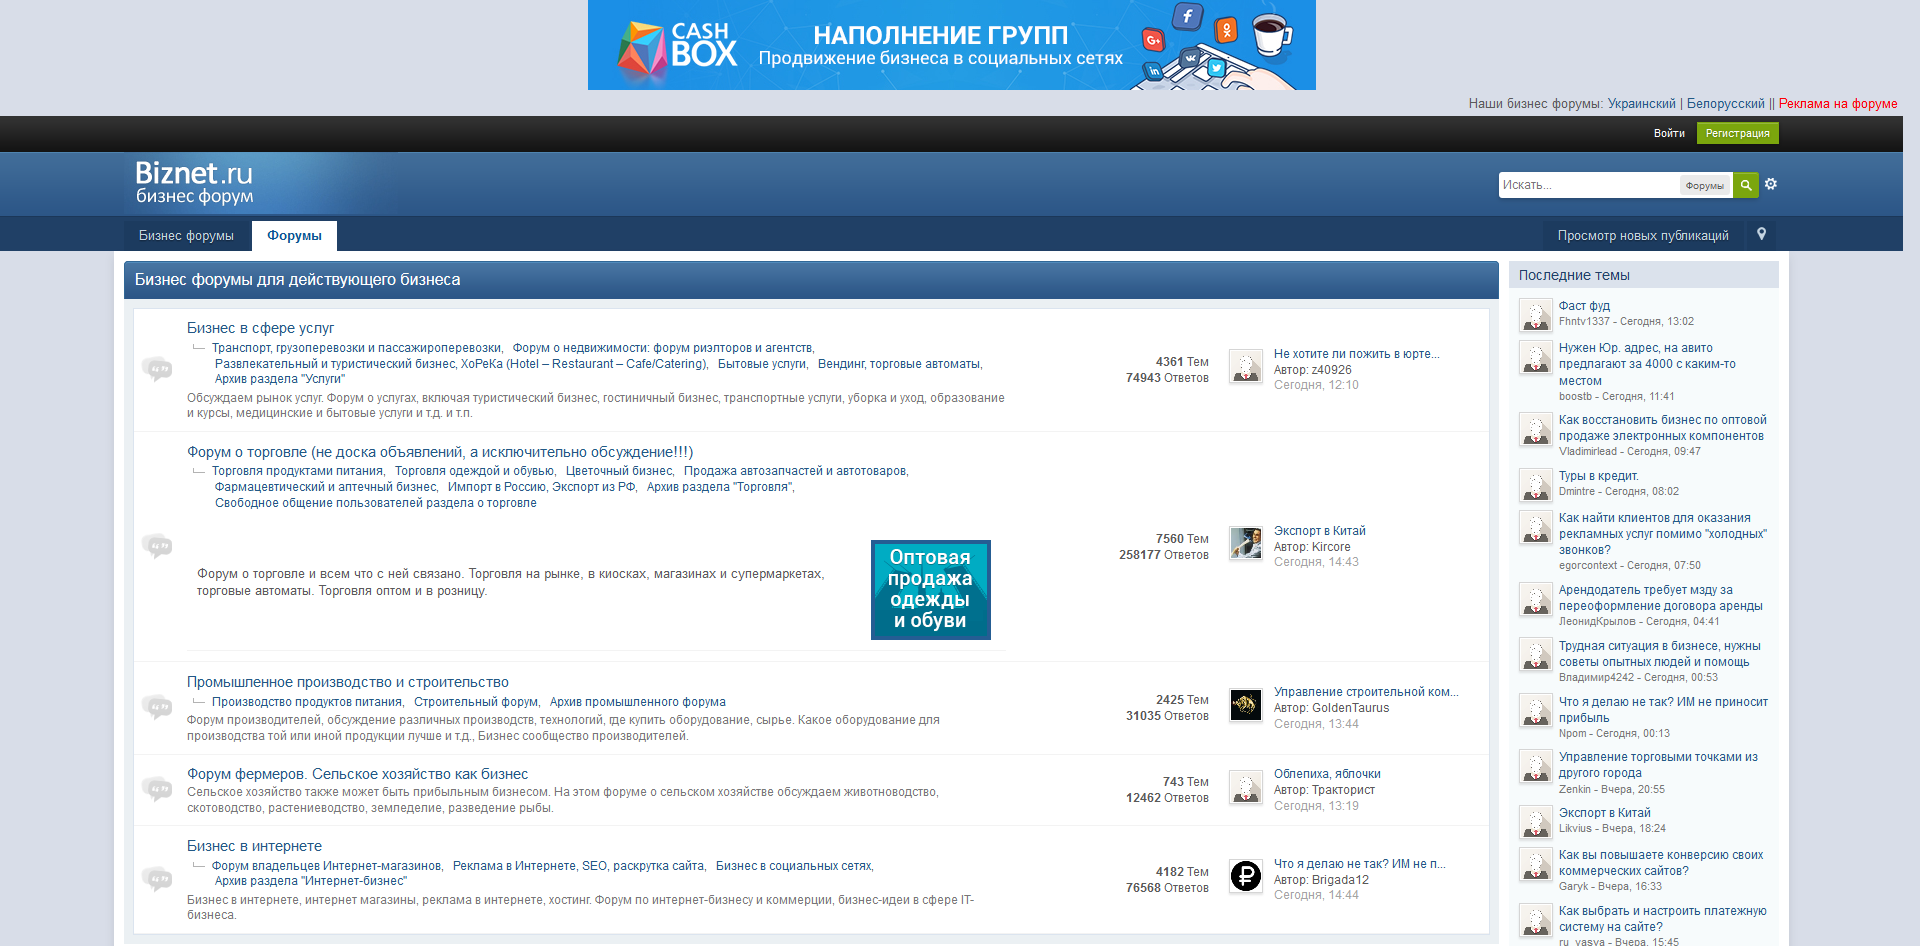 Страница форума малого бизнеса Biznet.ru